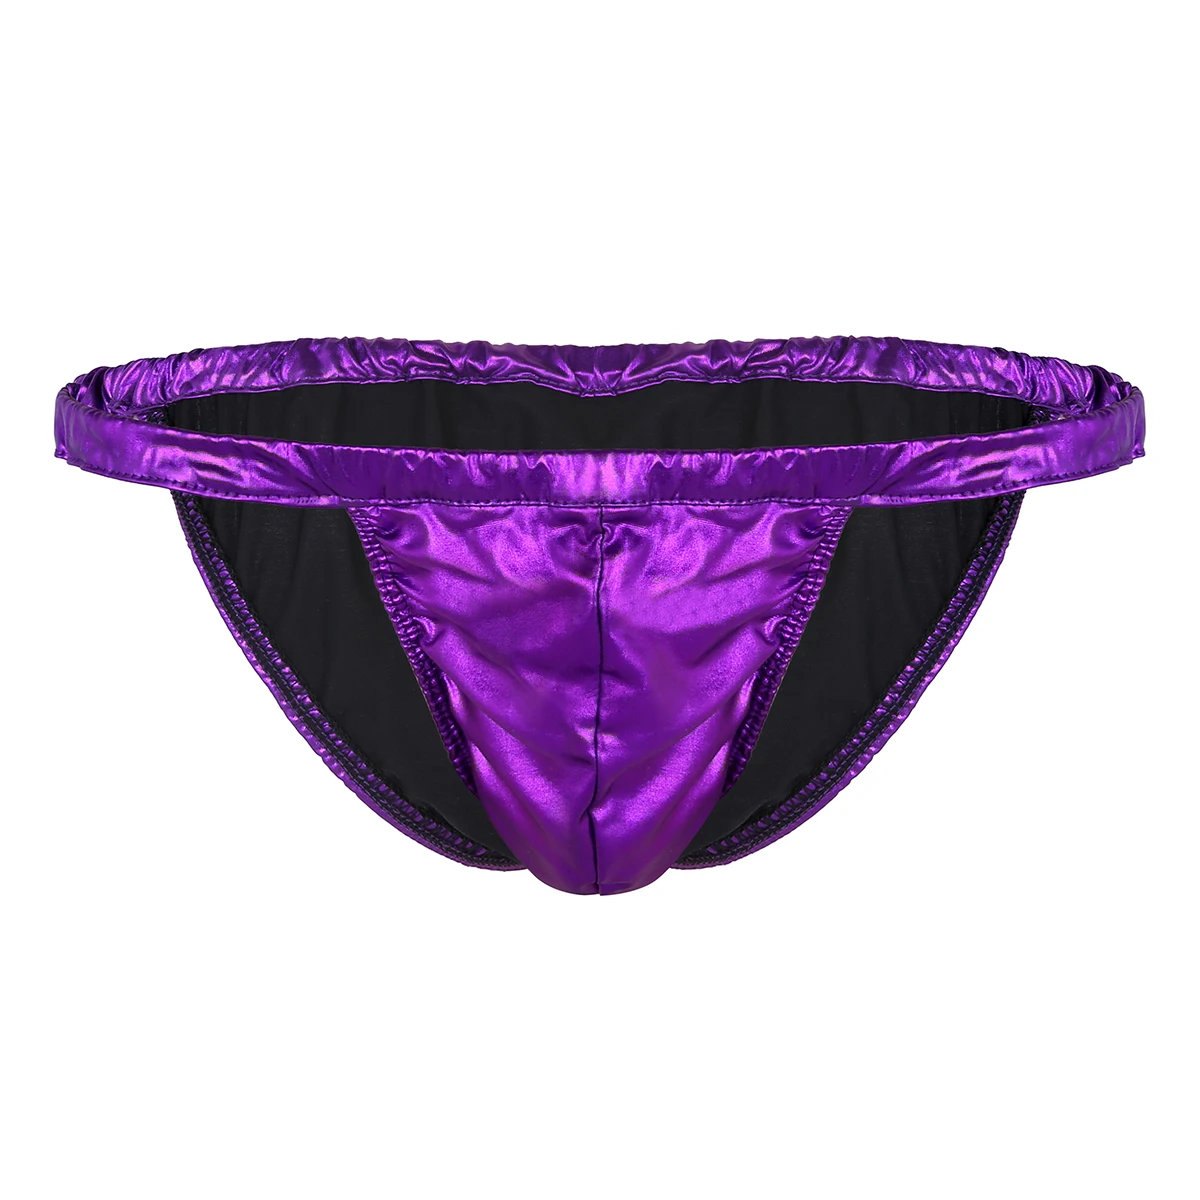 TiaoBug блестящие однотонные спандекс латекс трусы купальники tanga сексуальные мужские плавки нижнее белье купальный костюм Мужской купальный костюм трусы - Цвет: Purple